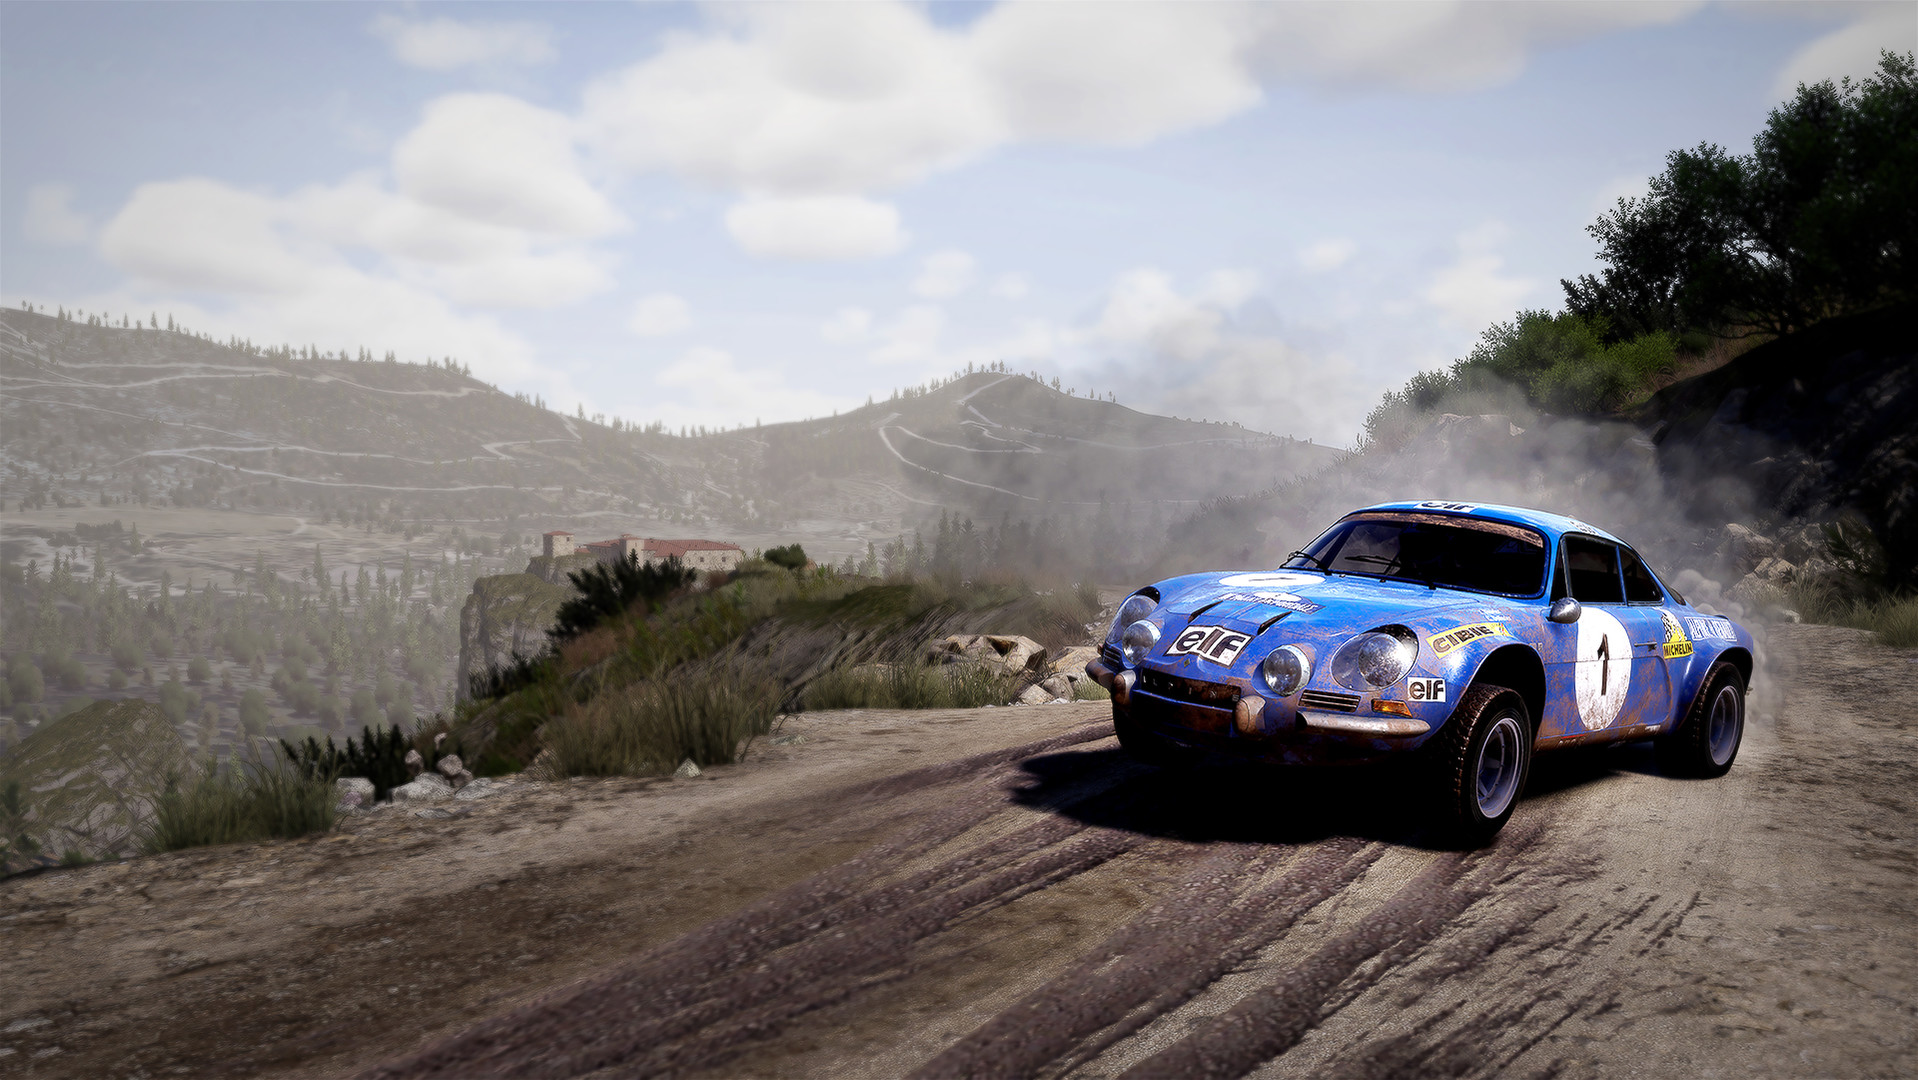 More information about "WRC 10 si presenta in video e immagini, disponibile dal 2 Settembre"